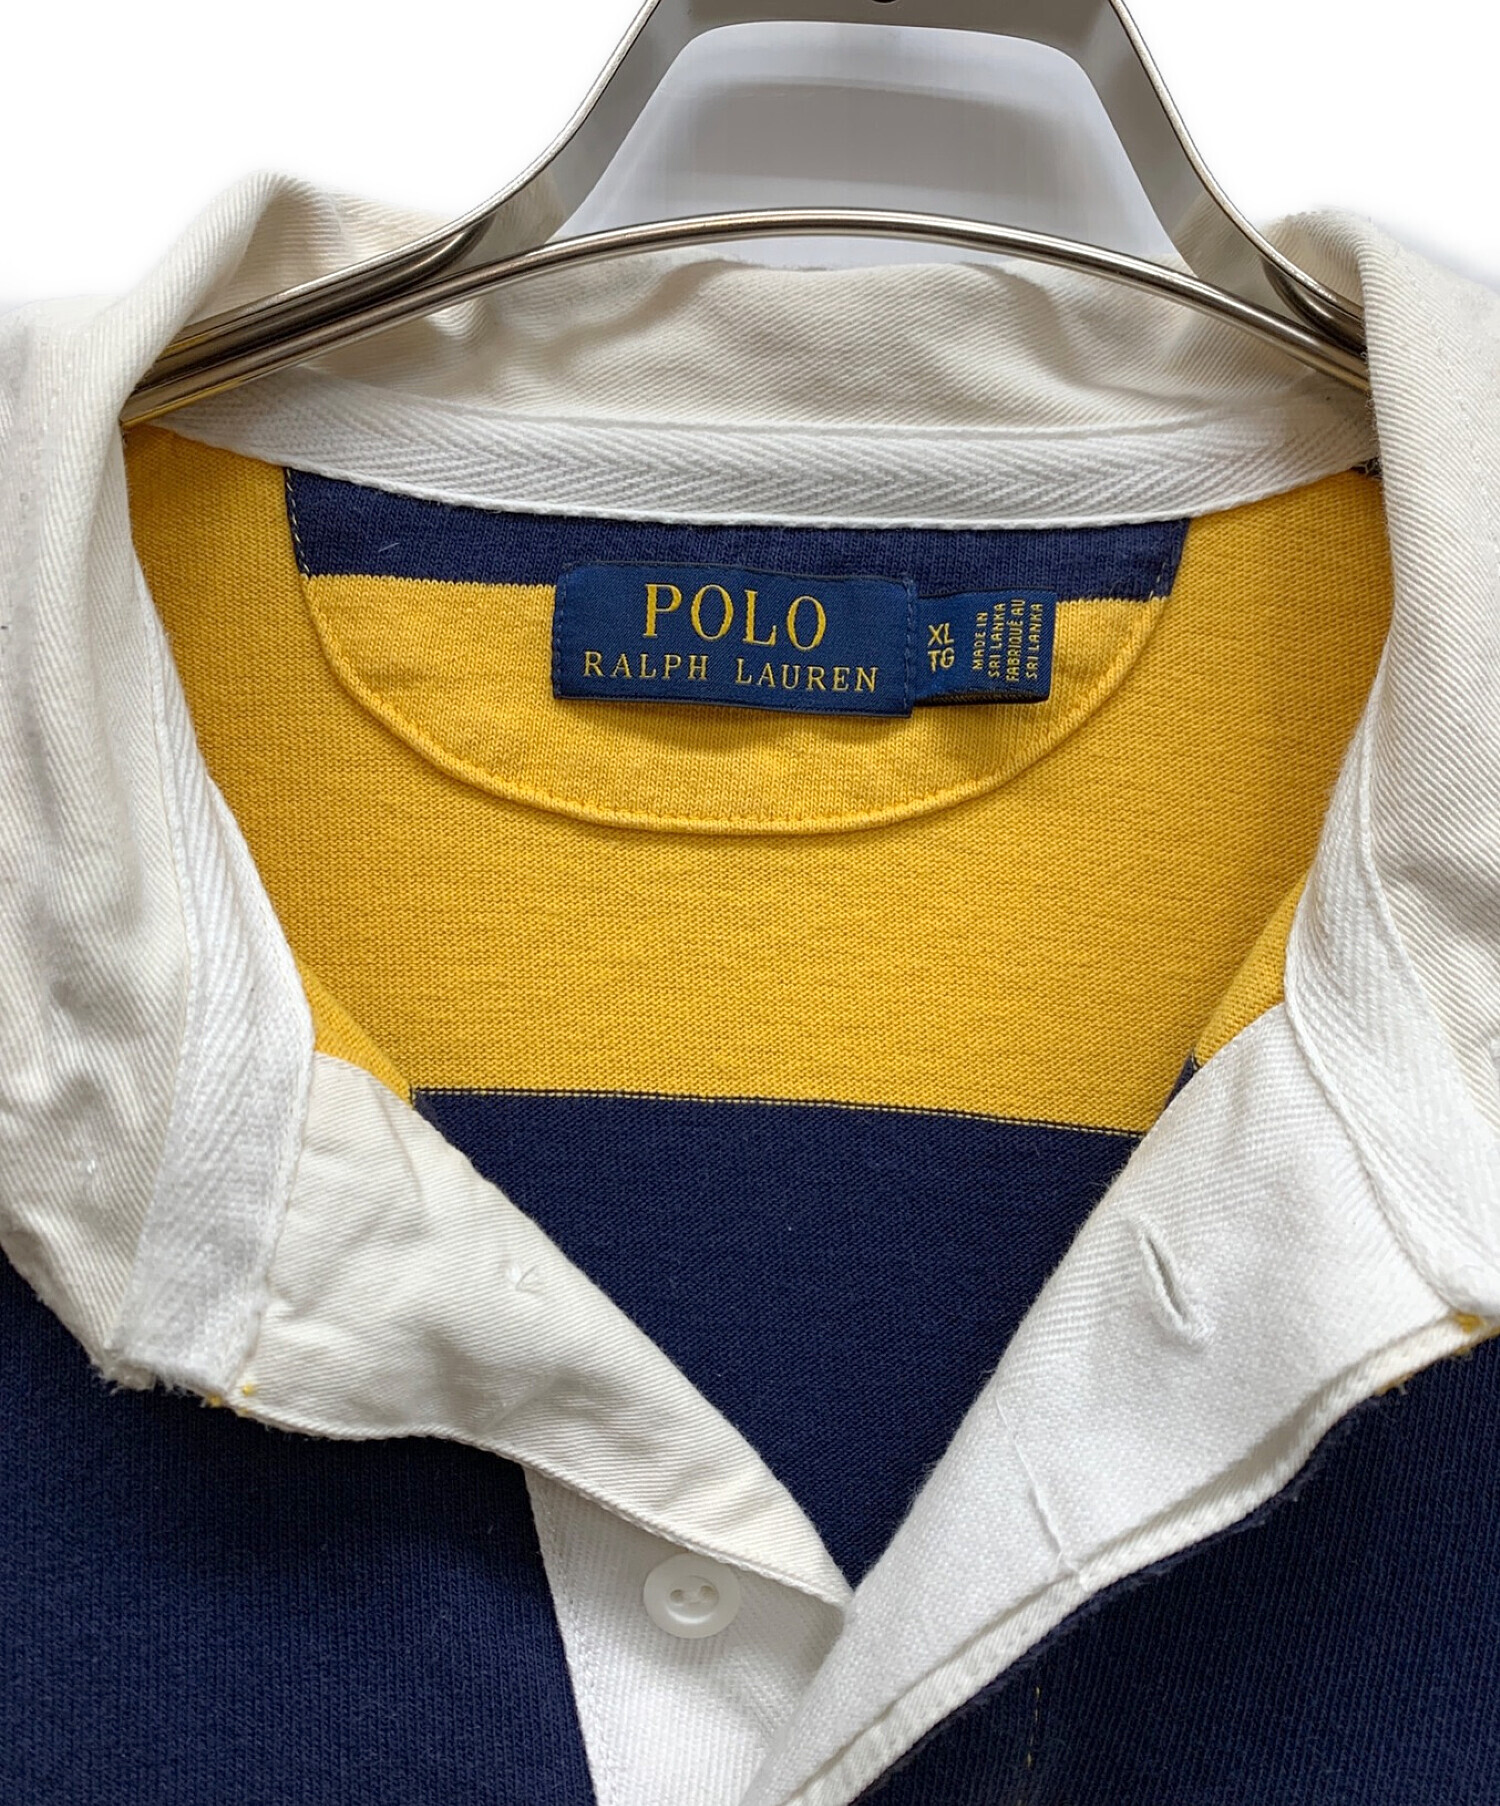 POLO RALPH LAUREN (ポロ・ラルフローレン) ラガーシャツ イエロー×ネイビー サイズ:XL